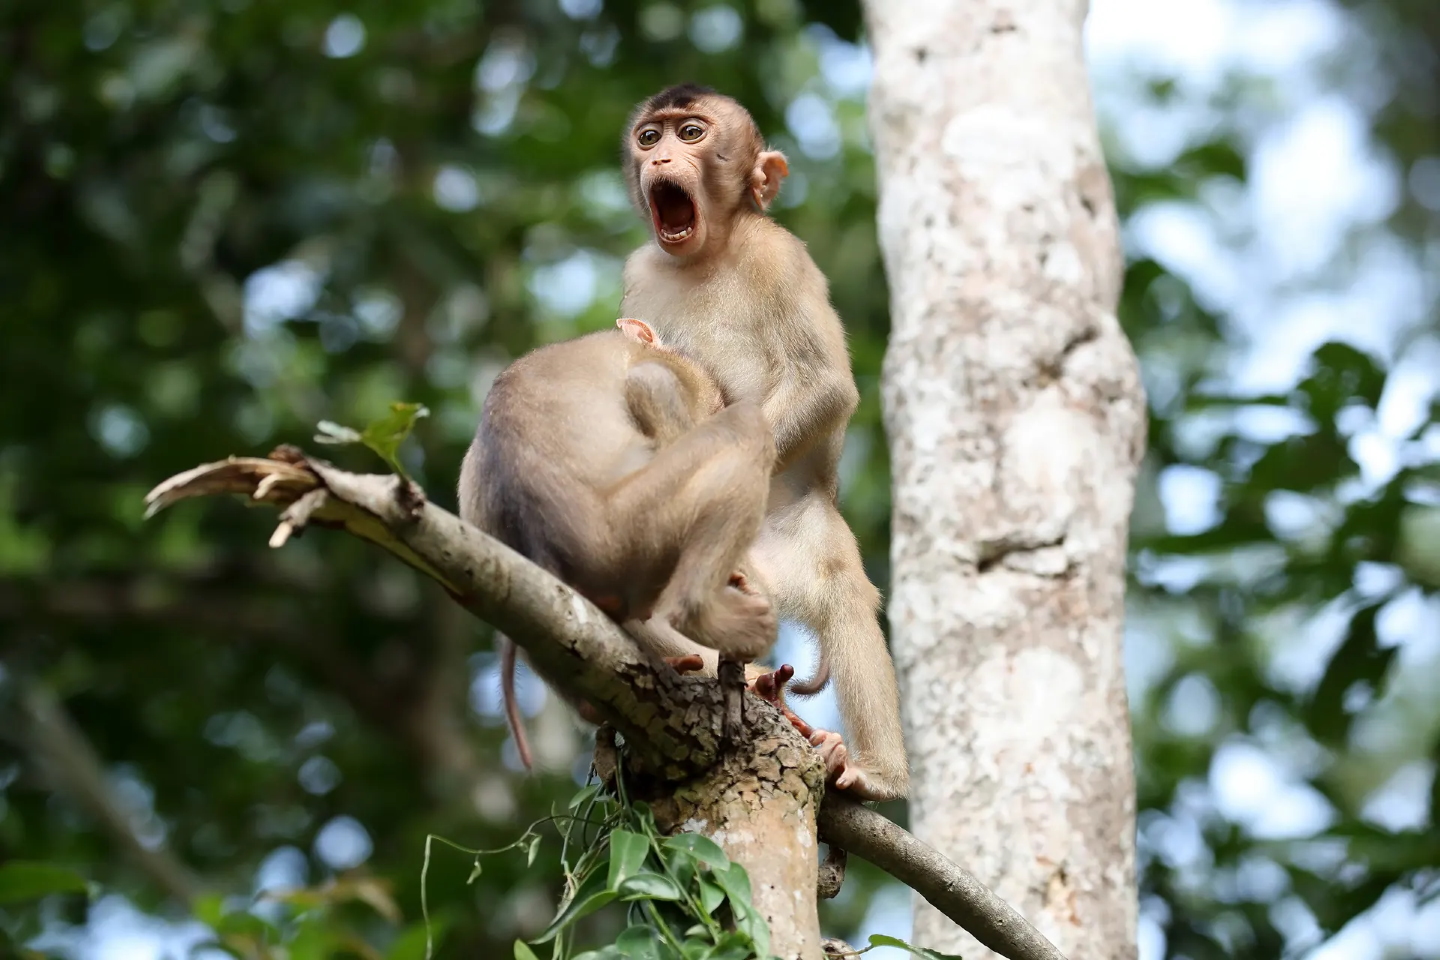 Обезьяний бизнес в Борнео, Малайзия.
«Во время поездки на Борнео у меня было много возможностей наблюдать, как обезьяны взаимодействуют друг с другом. Эти макаки показали мне немного больше, чем я ожидал!». Фото: Megan Lorenz/CWPAs 2020